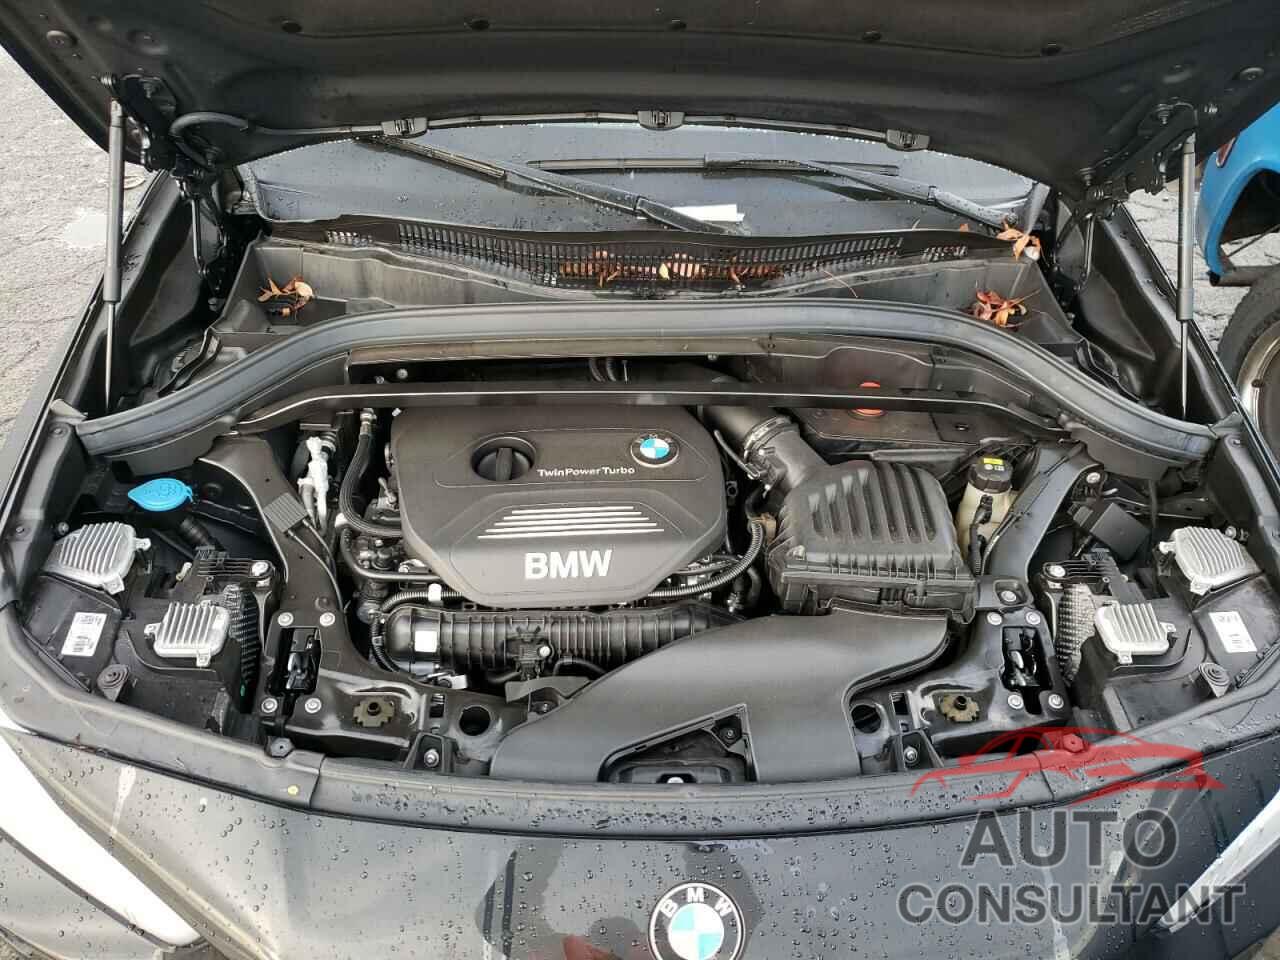 BMW X2 2018 - WBXYJ3C31JEB38020